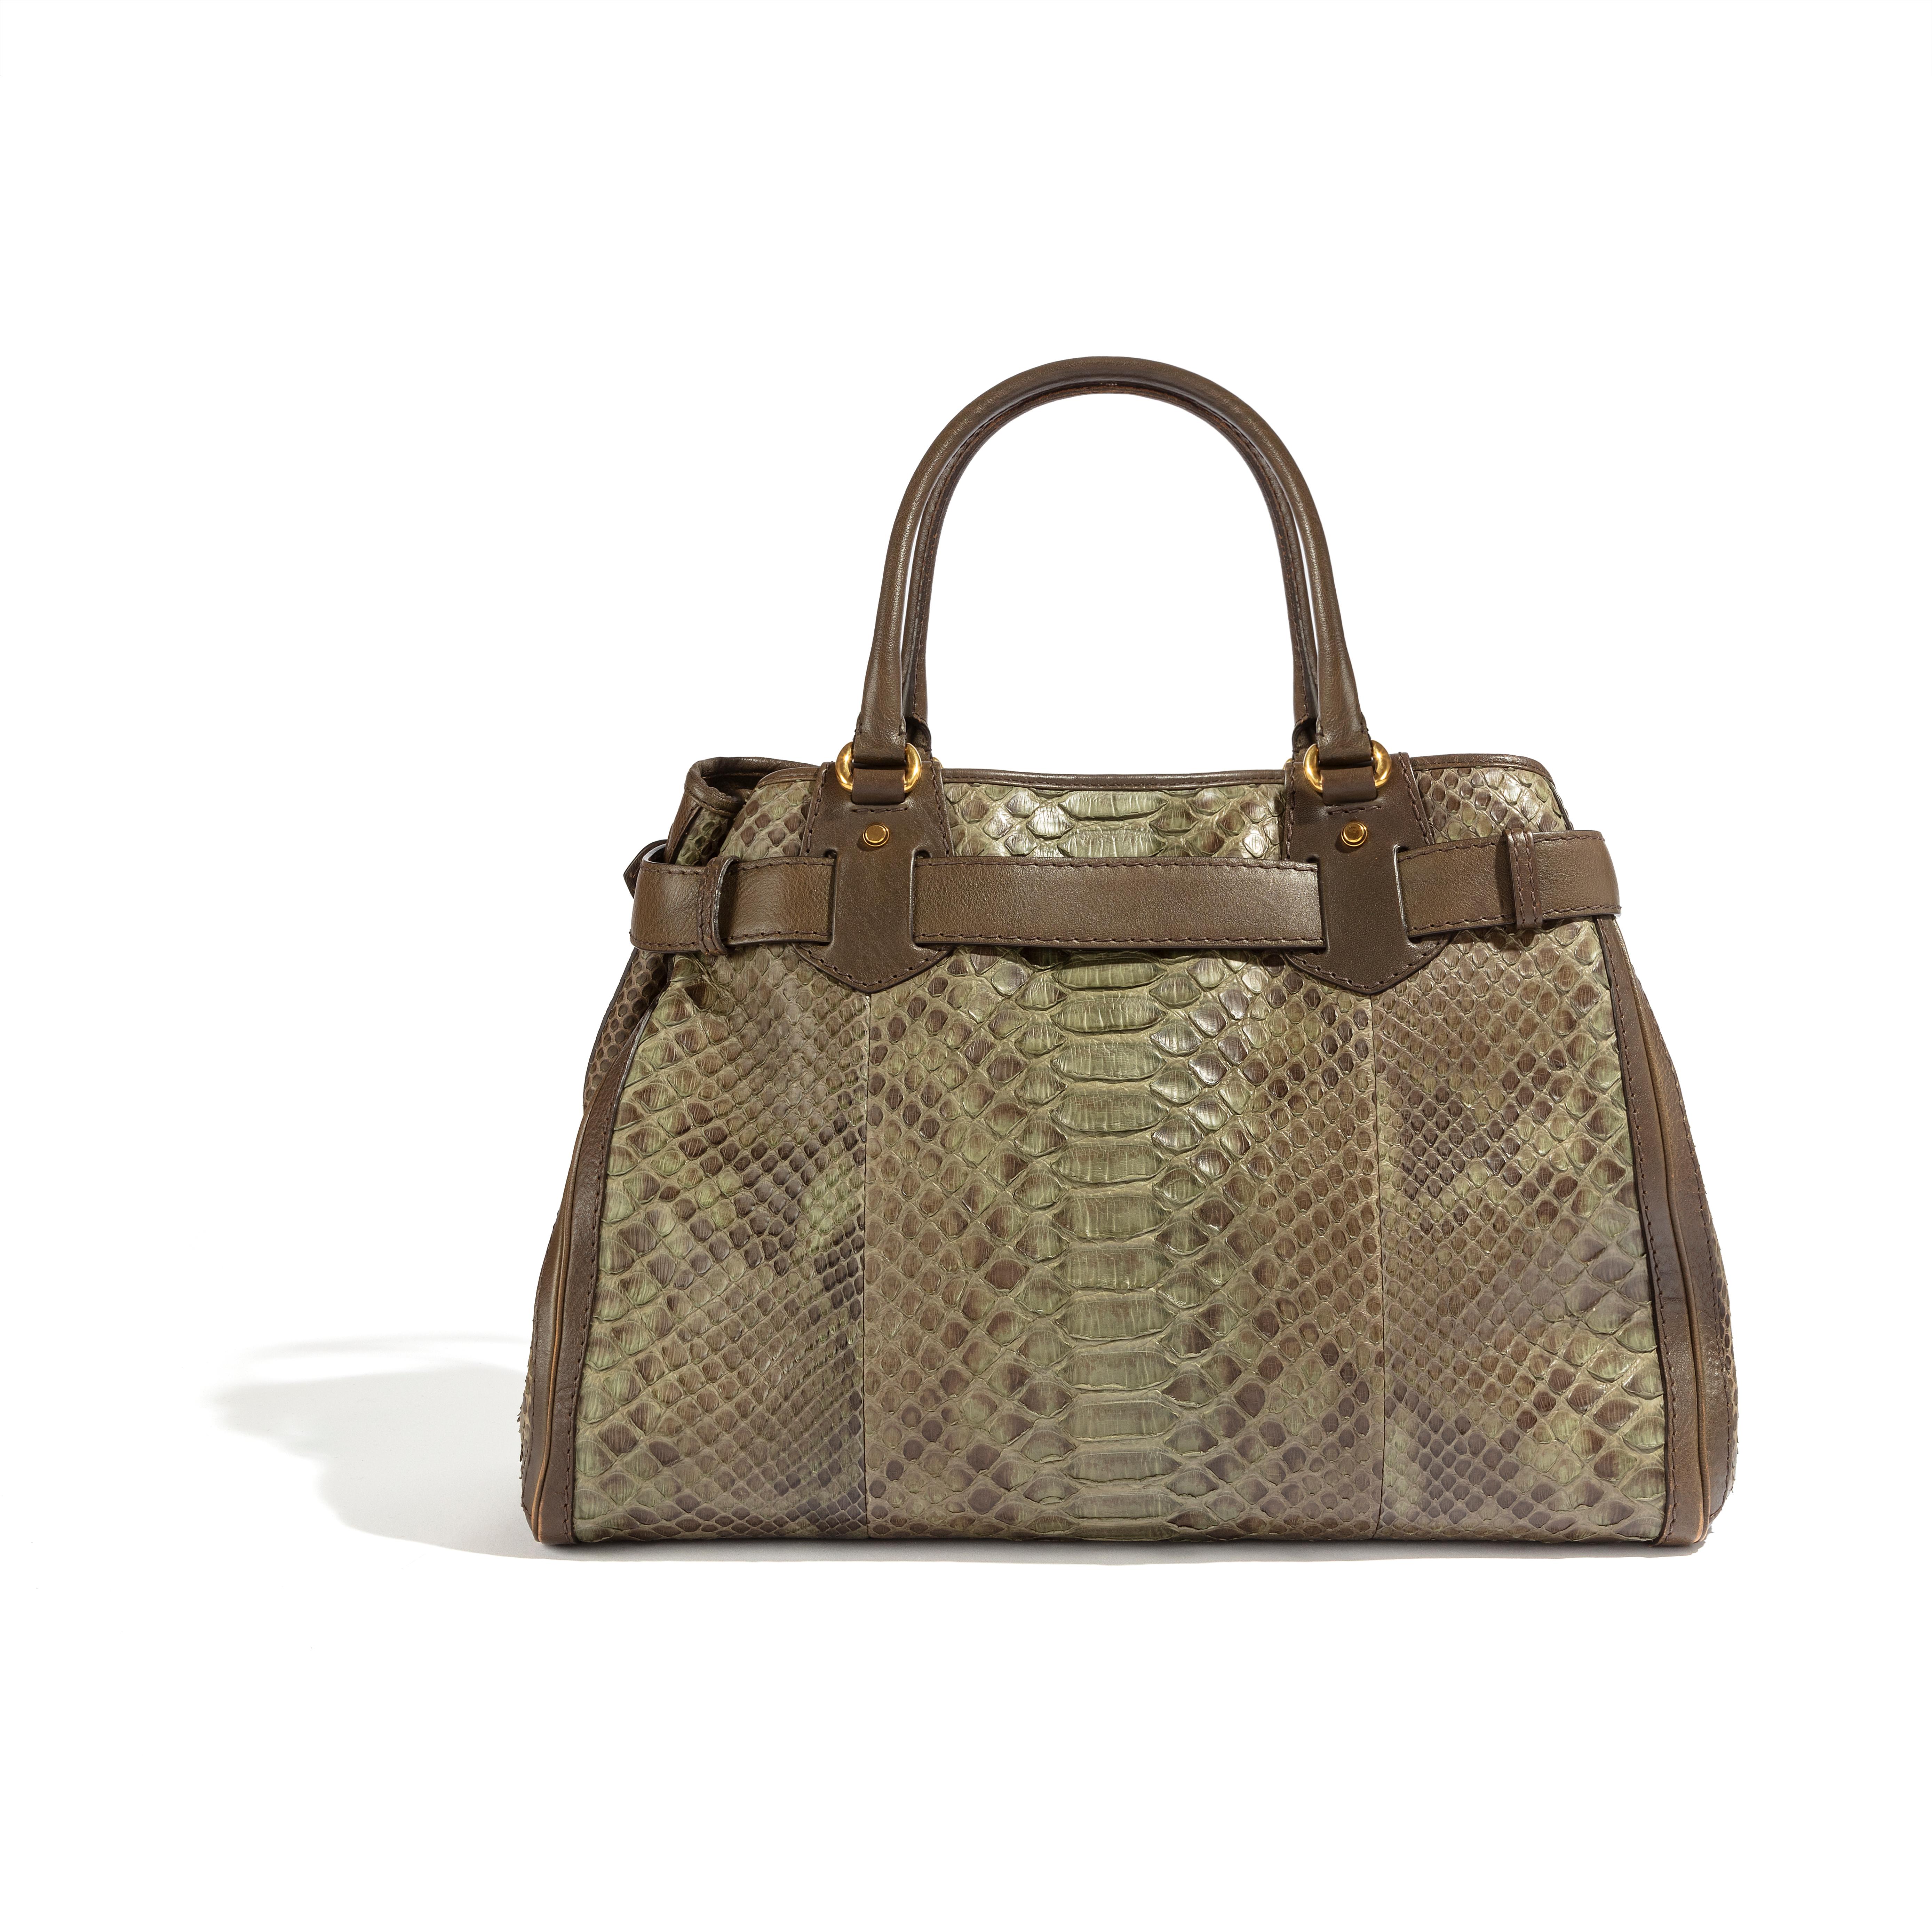 Die von Gucci gefertigte GG Running Handtasche ist ein luxuriöses und einzigartiges Accessoire, das jedes Outfit aufwertet. Die aus exotischem Leder gefertigte Handtasche besticht durch ihr unverwechselbares Aussehen. Die Beschriftungen auf der